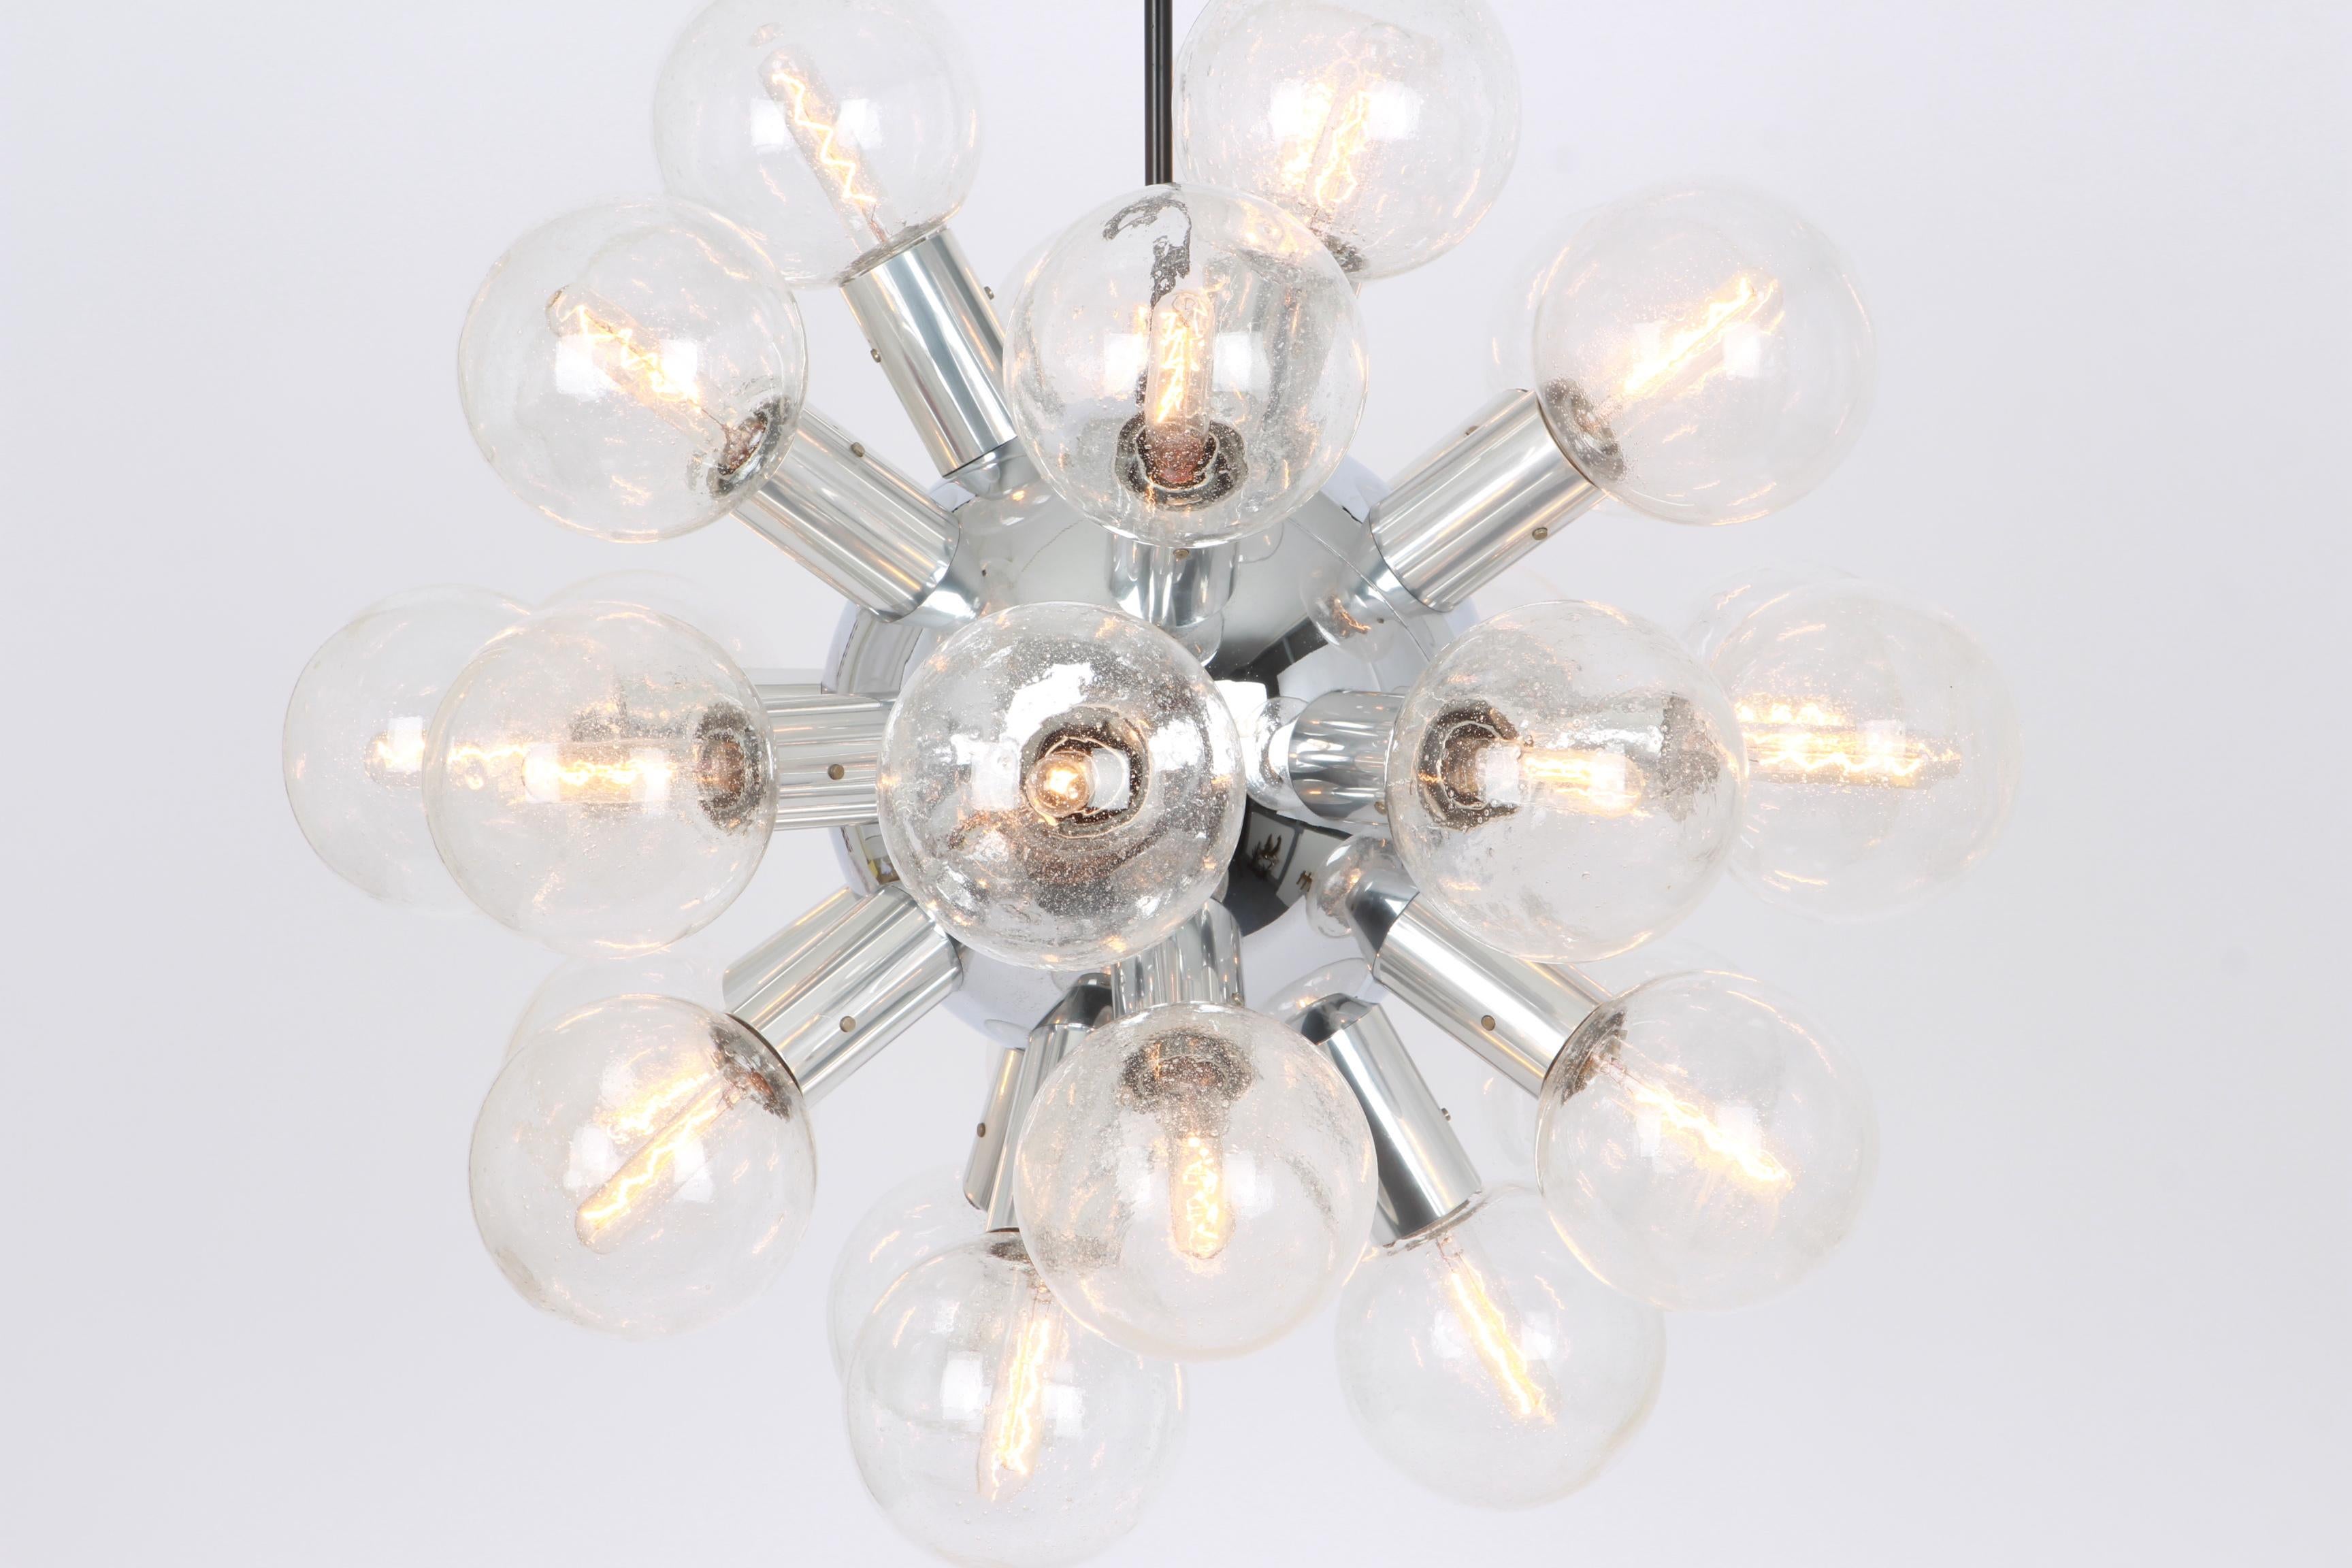 Exklusive Aluminium poliert mit 27 Gläsern (mundgeblasen)
Atemberaubende Sputnik-Pendelleuchte, entworfen von Kalmar Leuchten in den 1970er Jahren.

Fassungen: Es braucht 27x E14 kleine Glühbirnen.
Glühbirnen sind nicht enthalten. Es ist